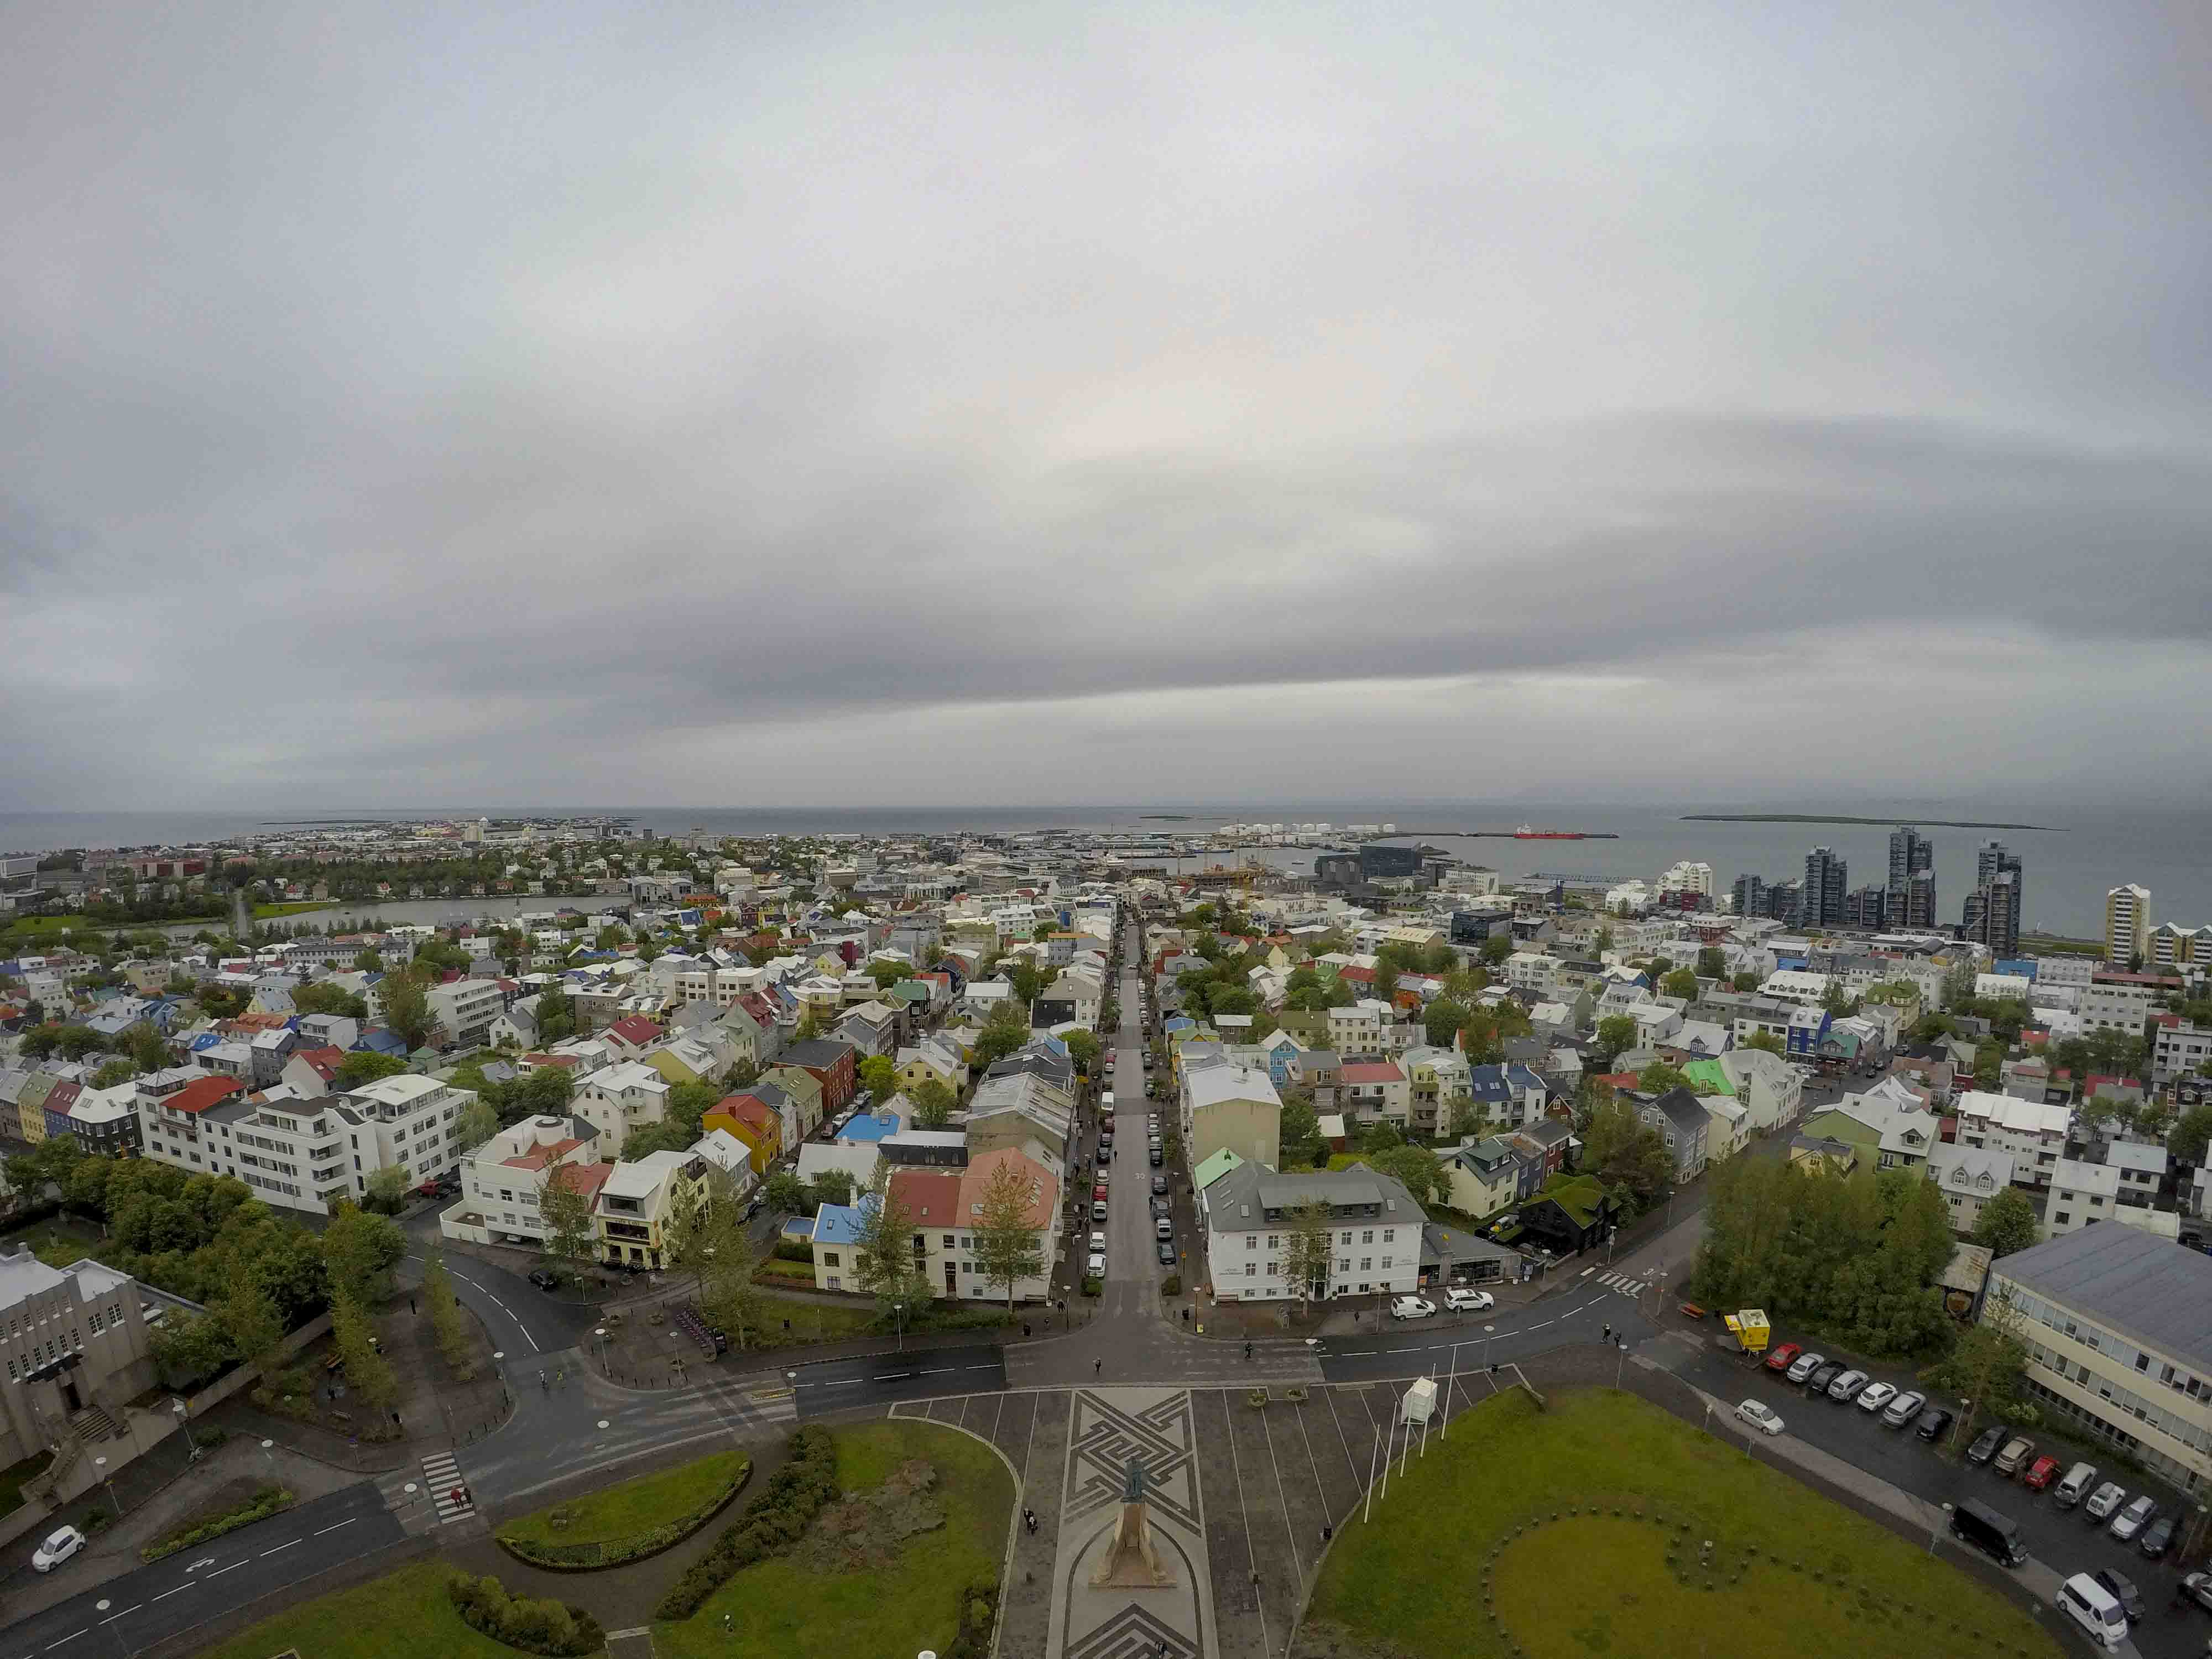 reykjavik